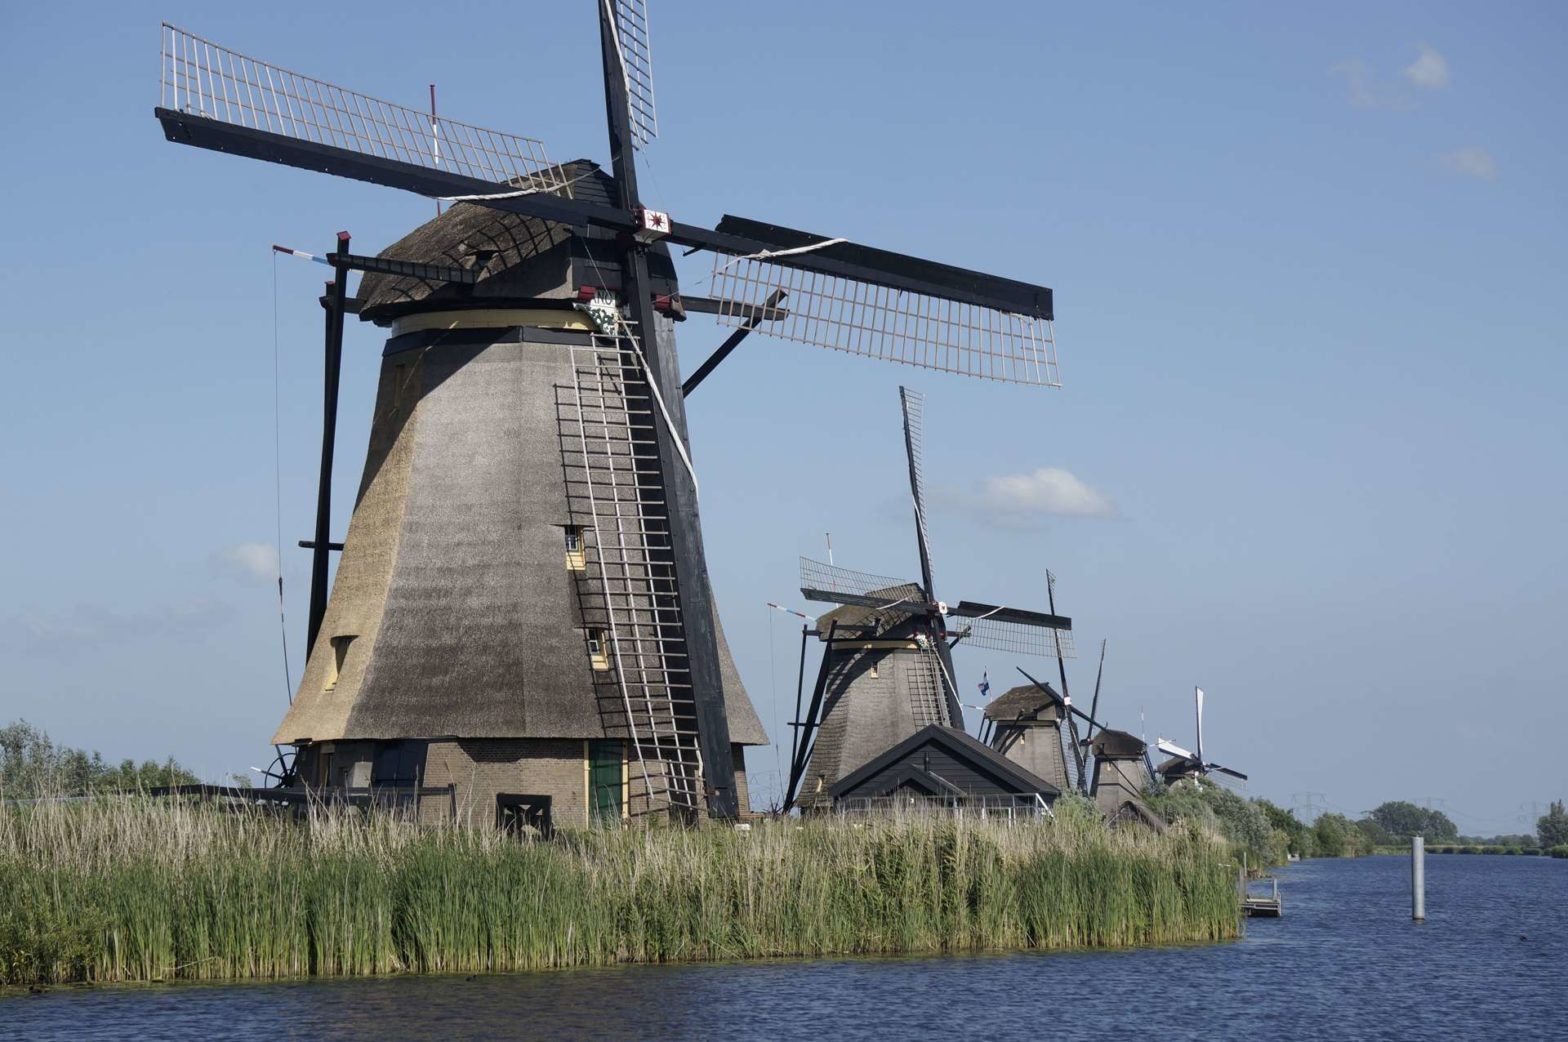 Kinderdijk Windmills